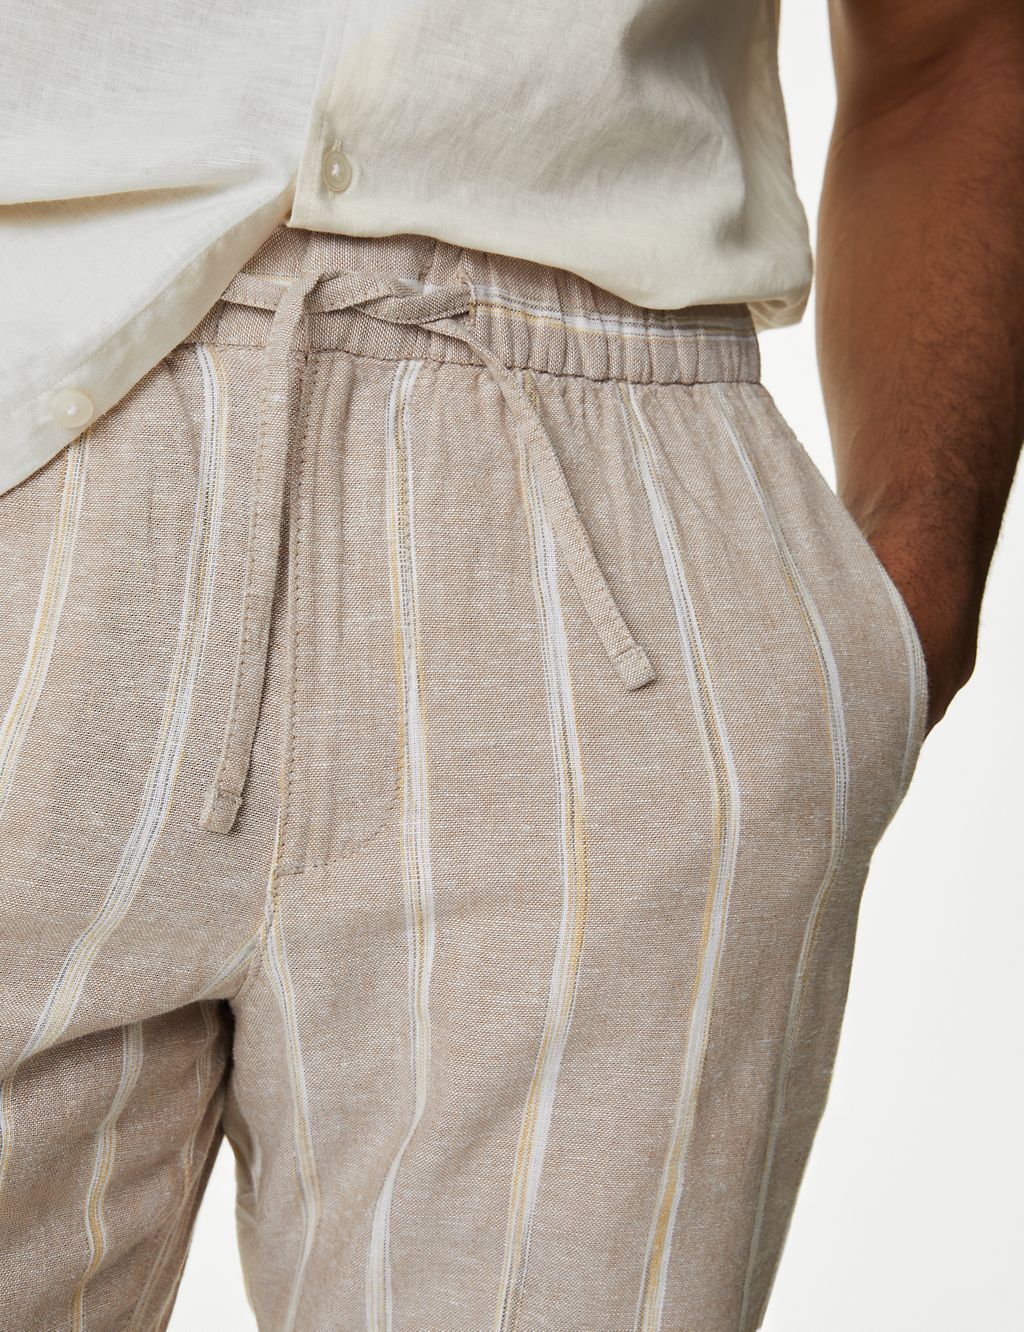 Linen Rich Elasticated Waist Striped Shorts 2 of 6